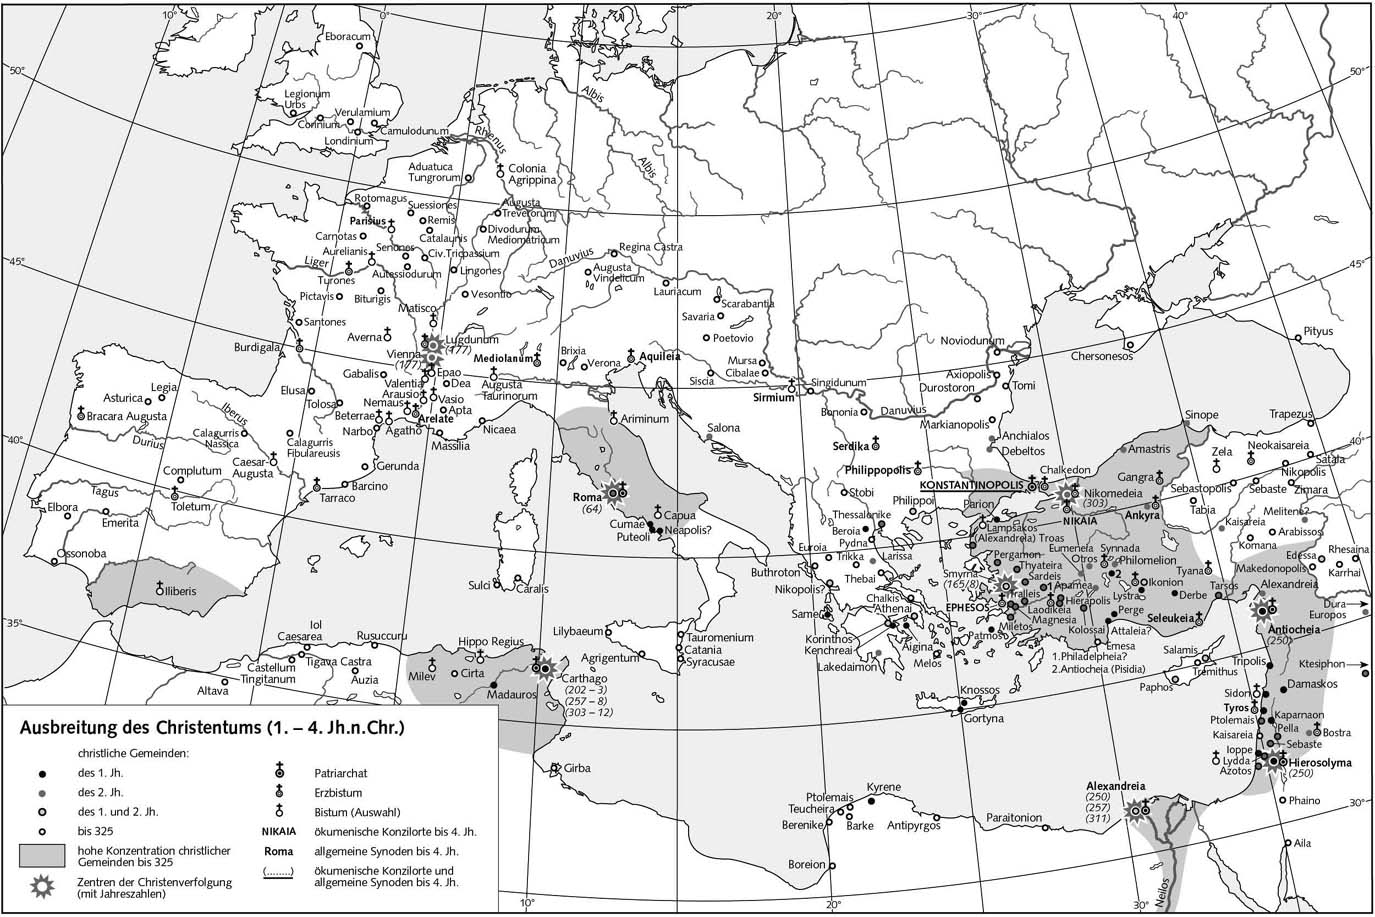 Распространение христианства (I-IV в. н.э.) - Карта